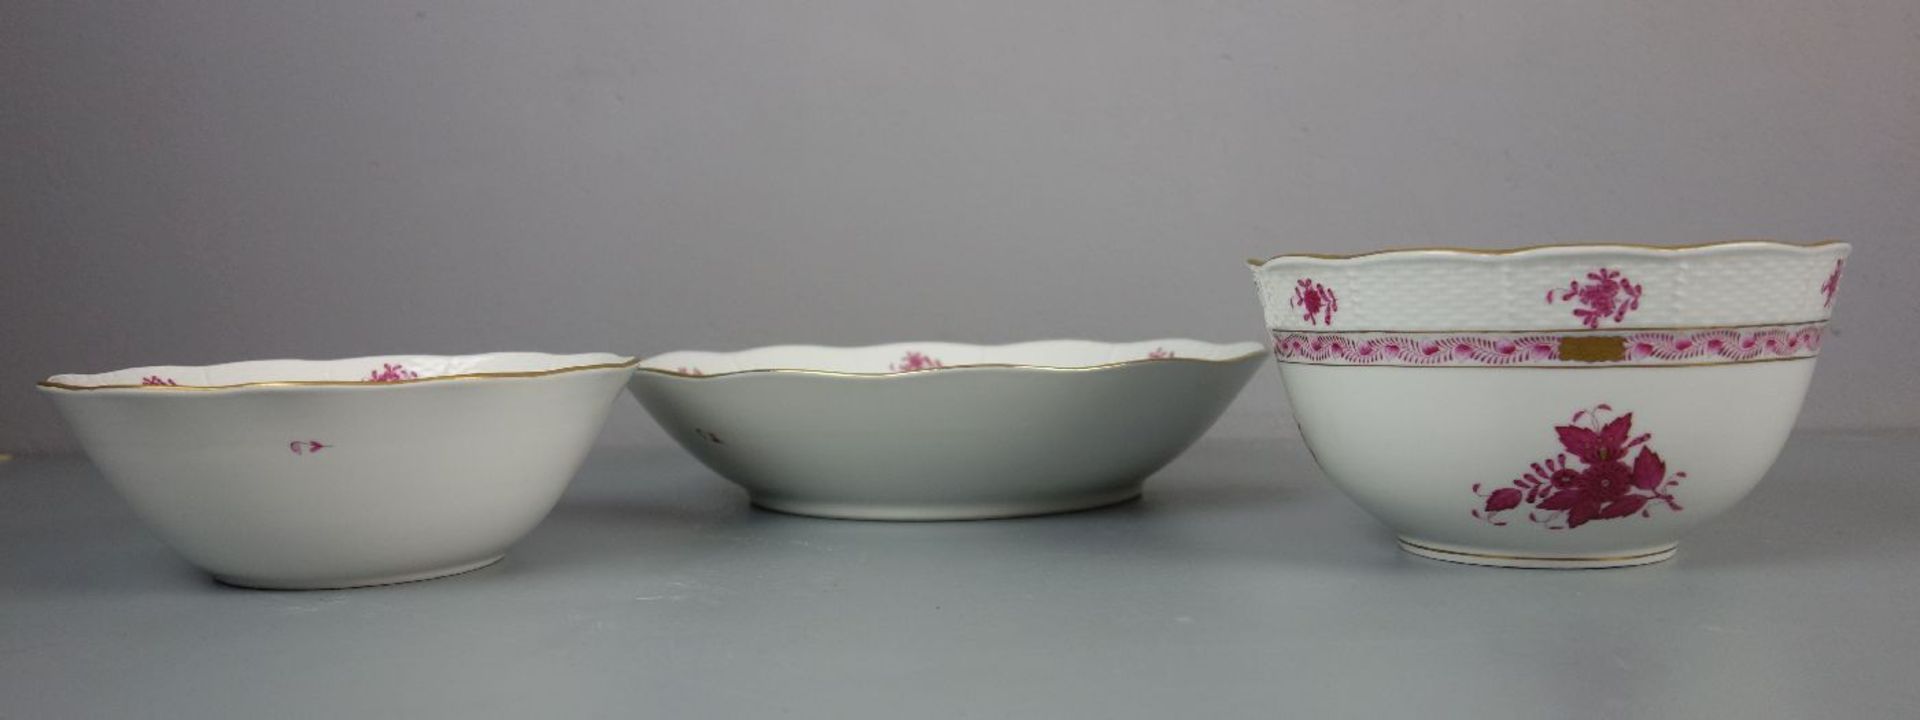 3 SCHALEN / bowls, Porzellan, Manufaktur Herend, Ungarn. 3 Schalen unterschiedlicher Größe in - Bild 4 aus 4